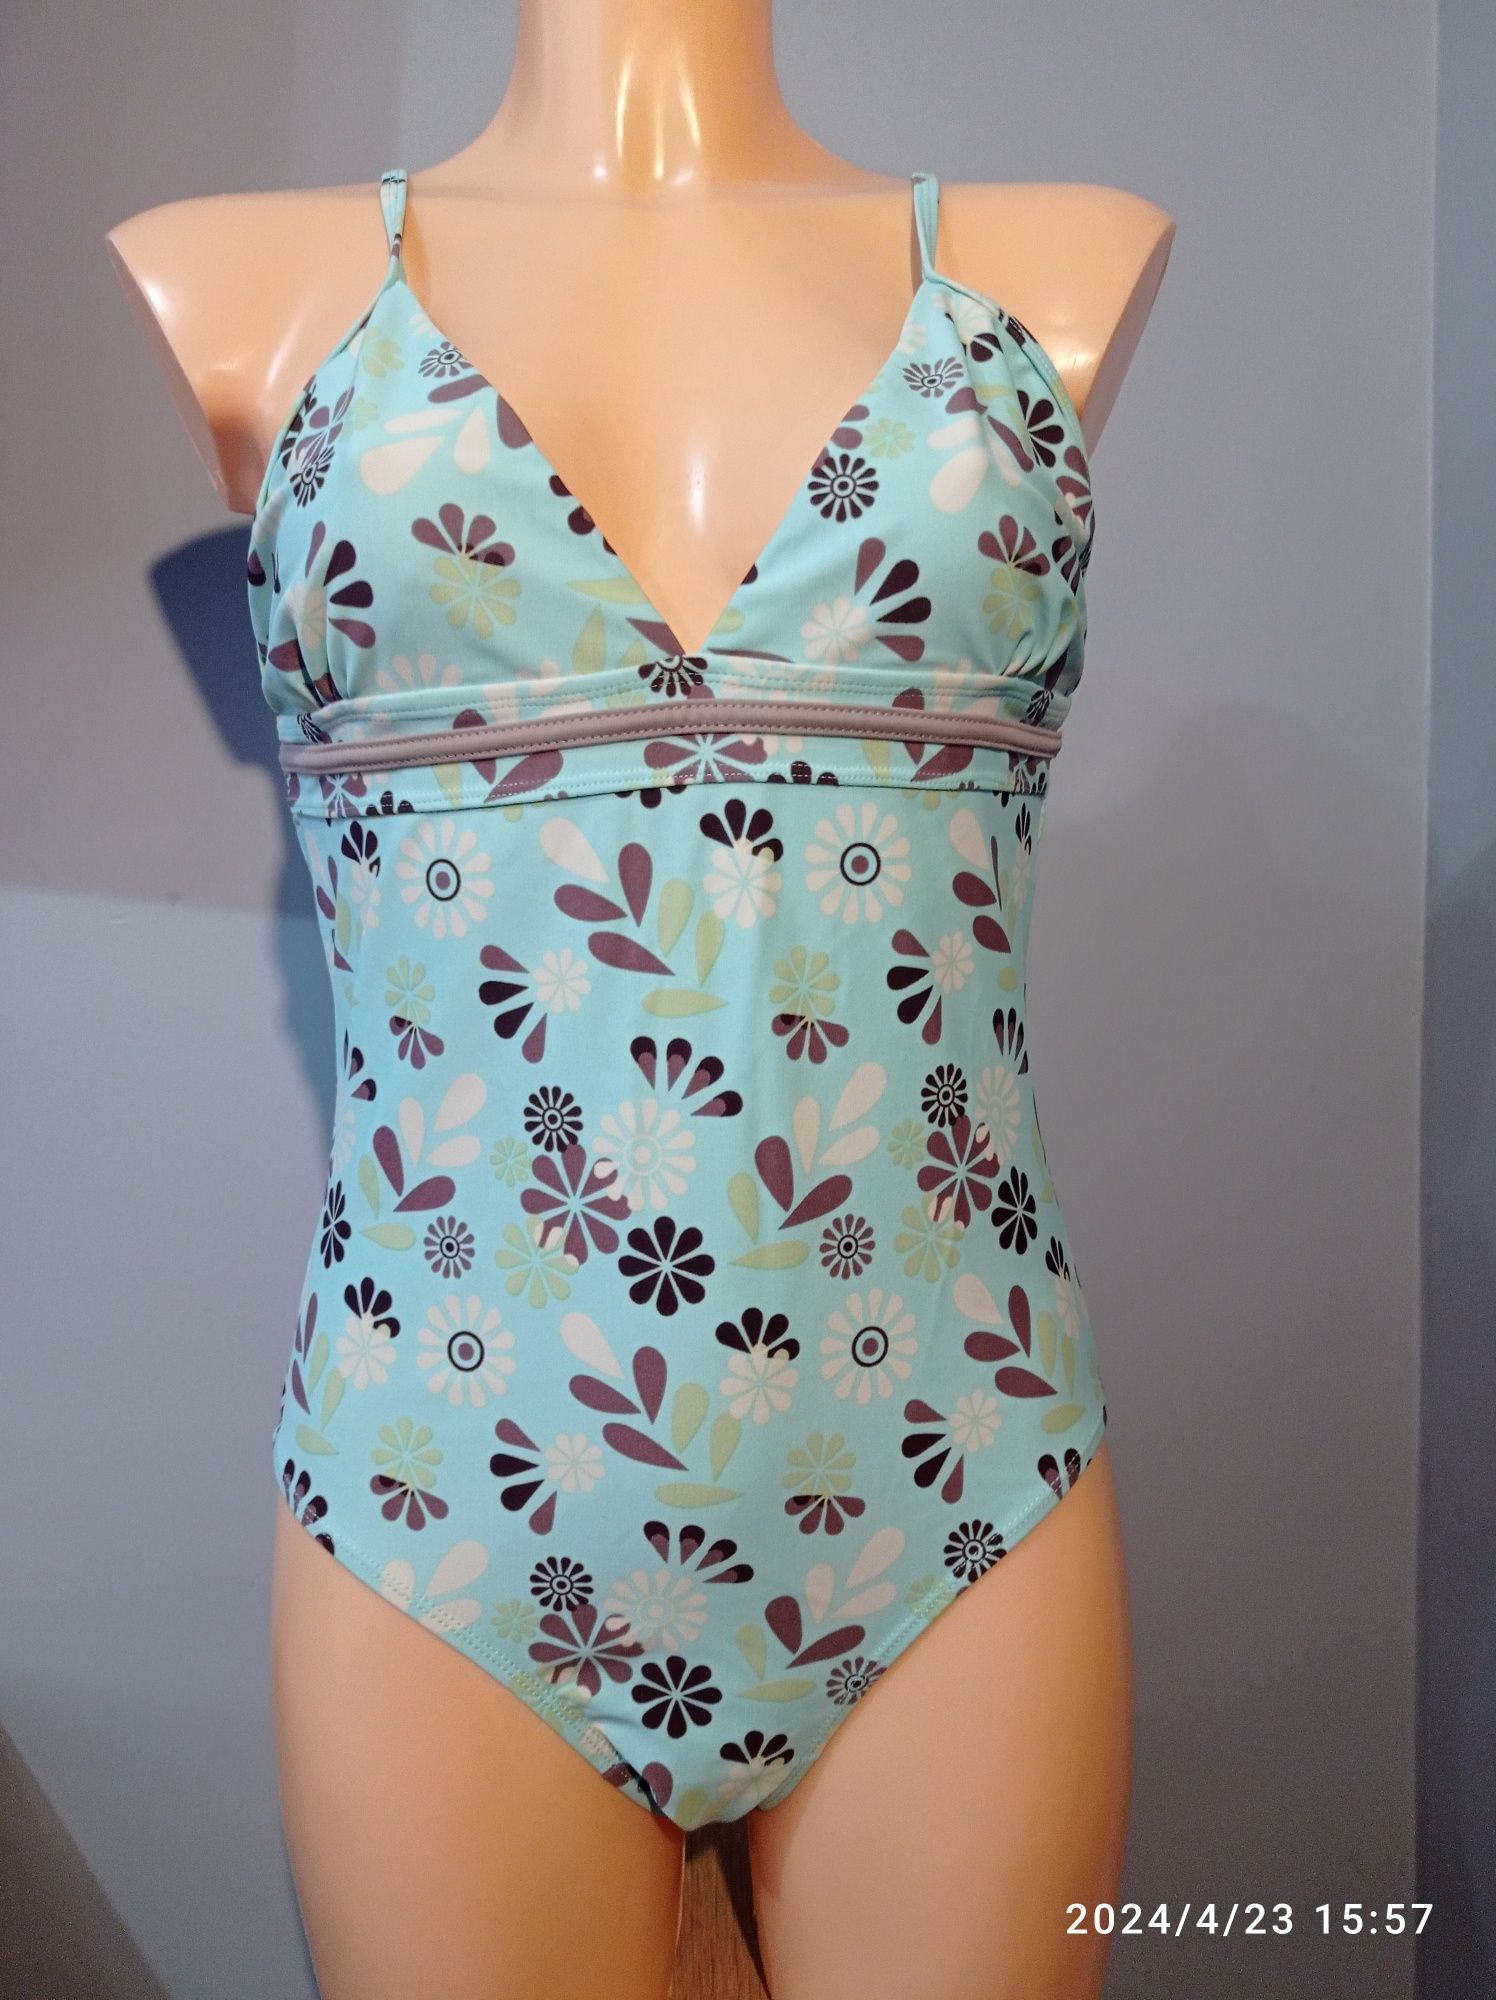 Kostium L XL strój kąpielowy kwiaty lato plaża basen